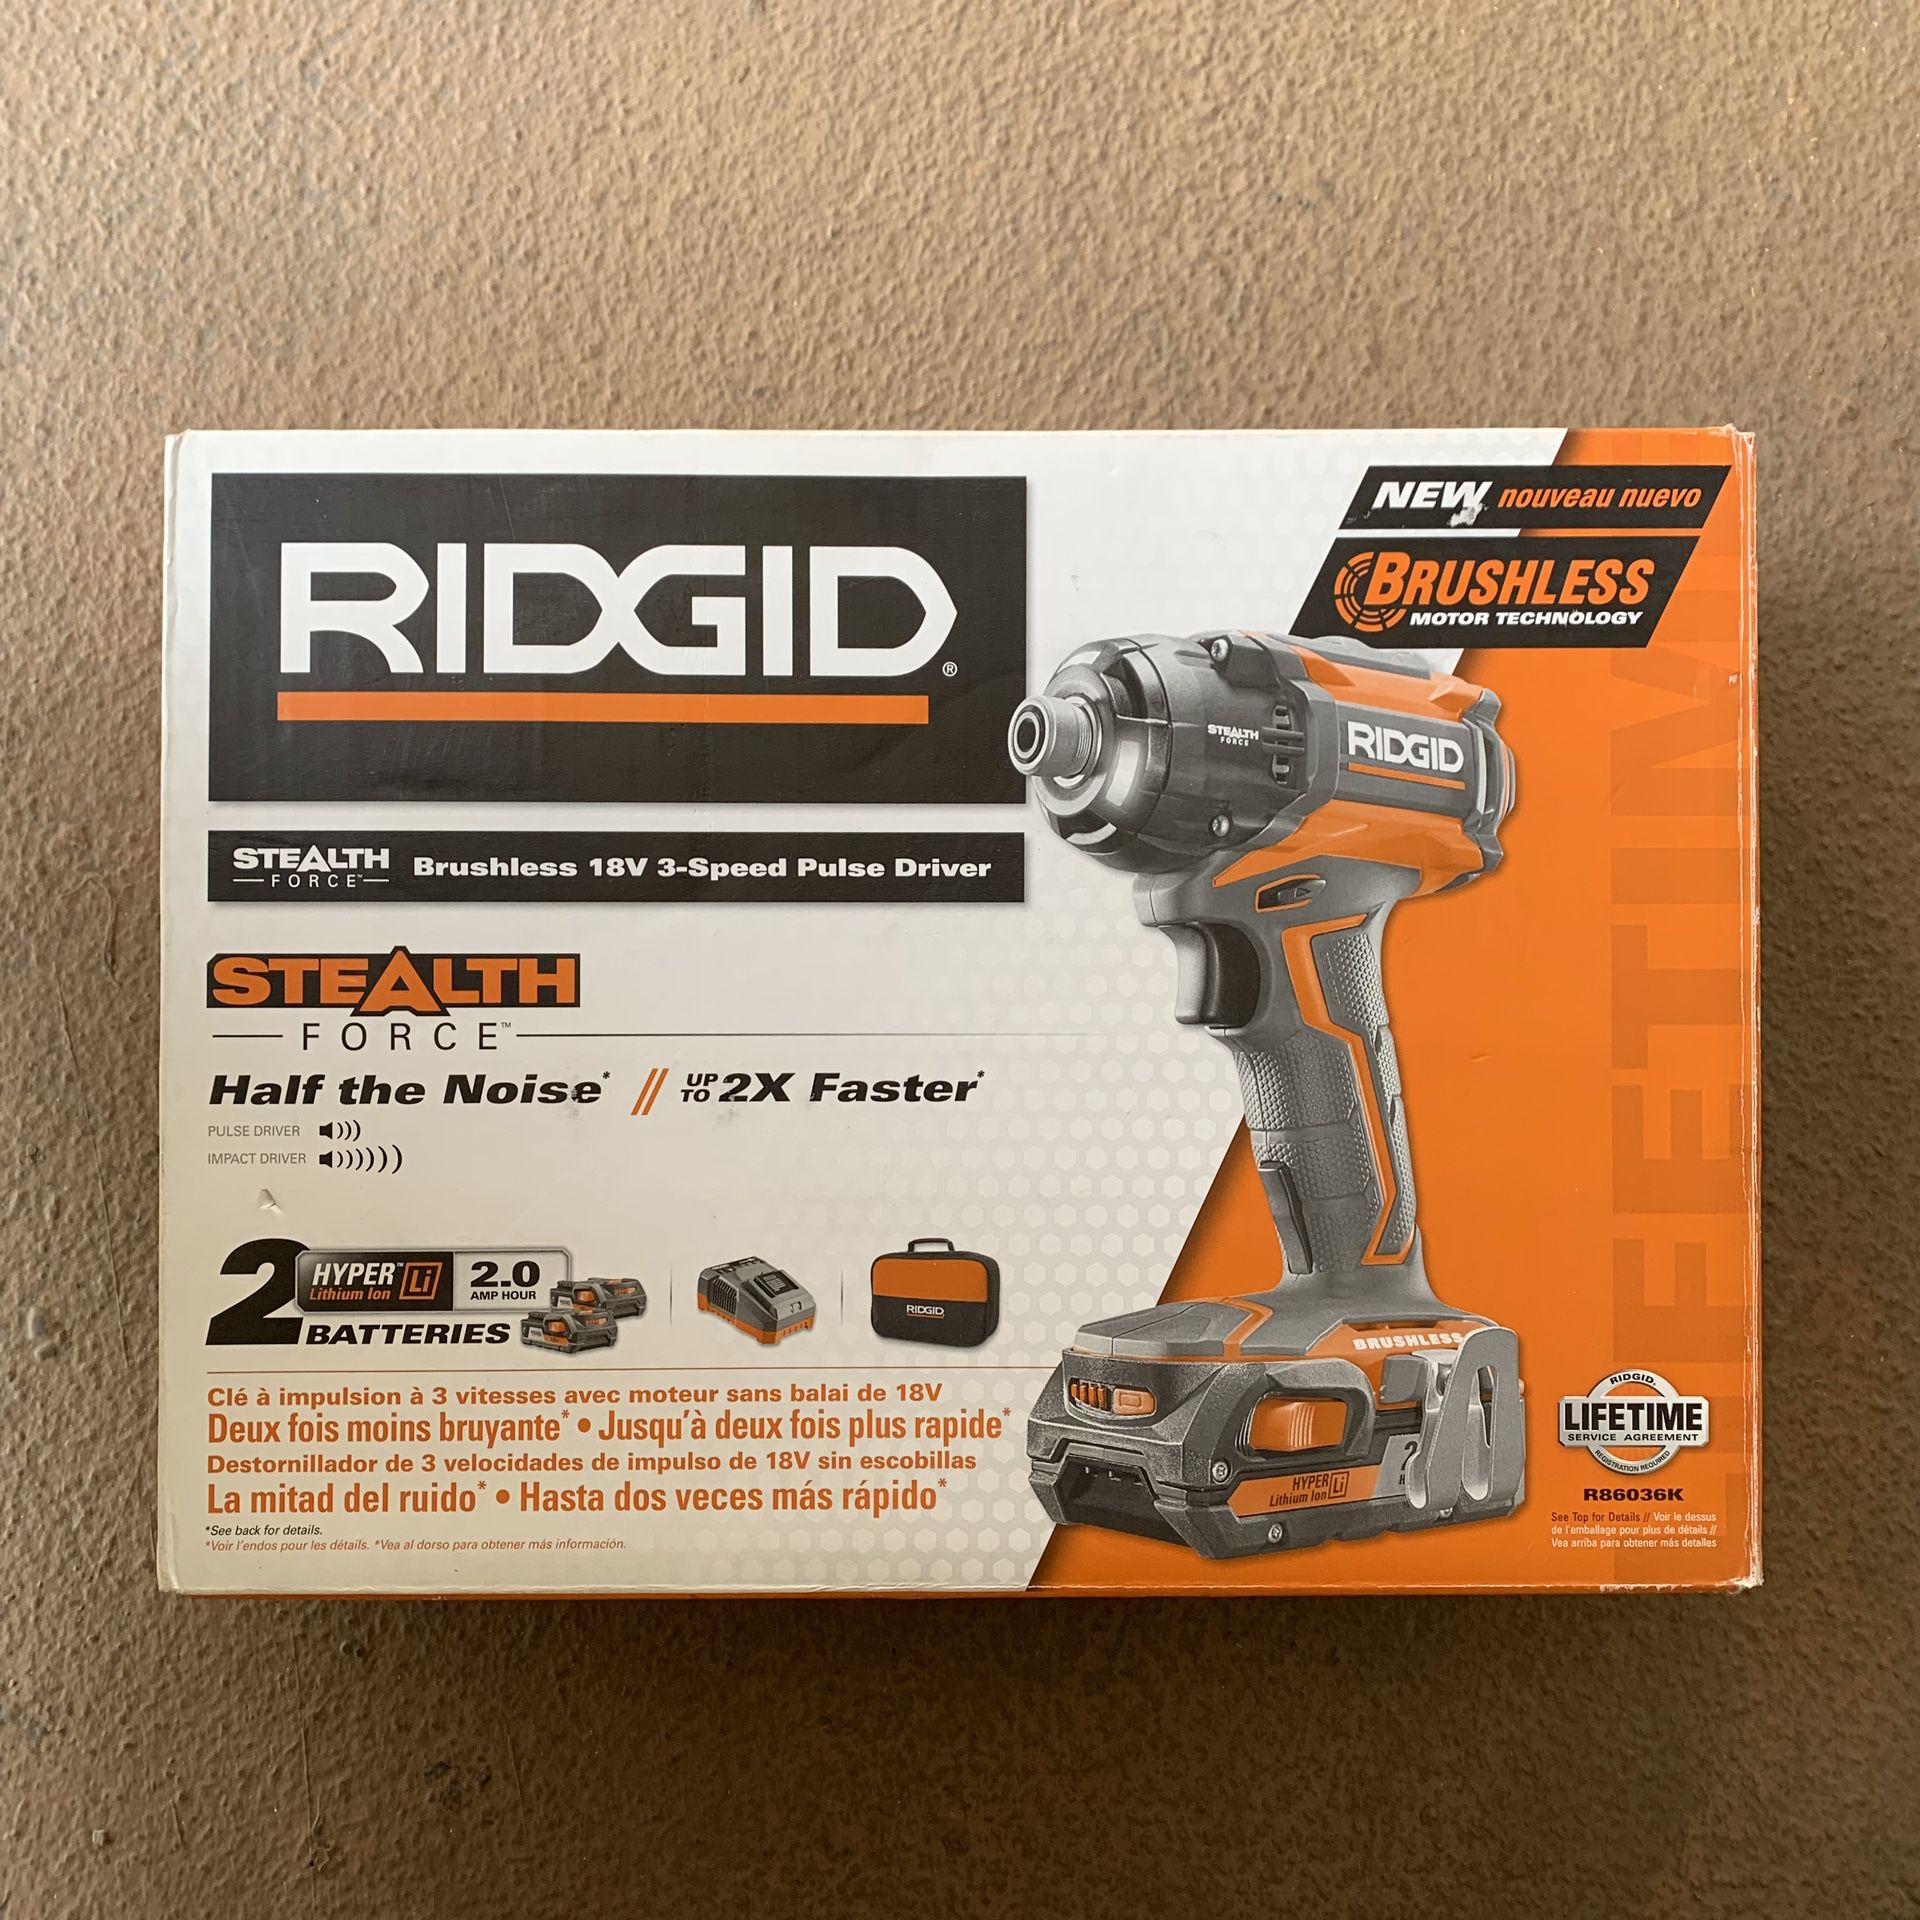 Ridgid power tools 18v impact driver